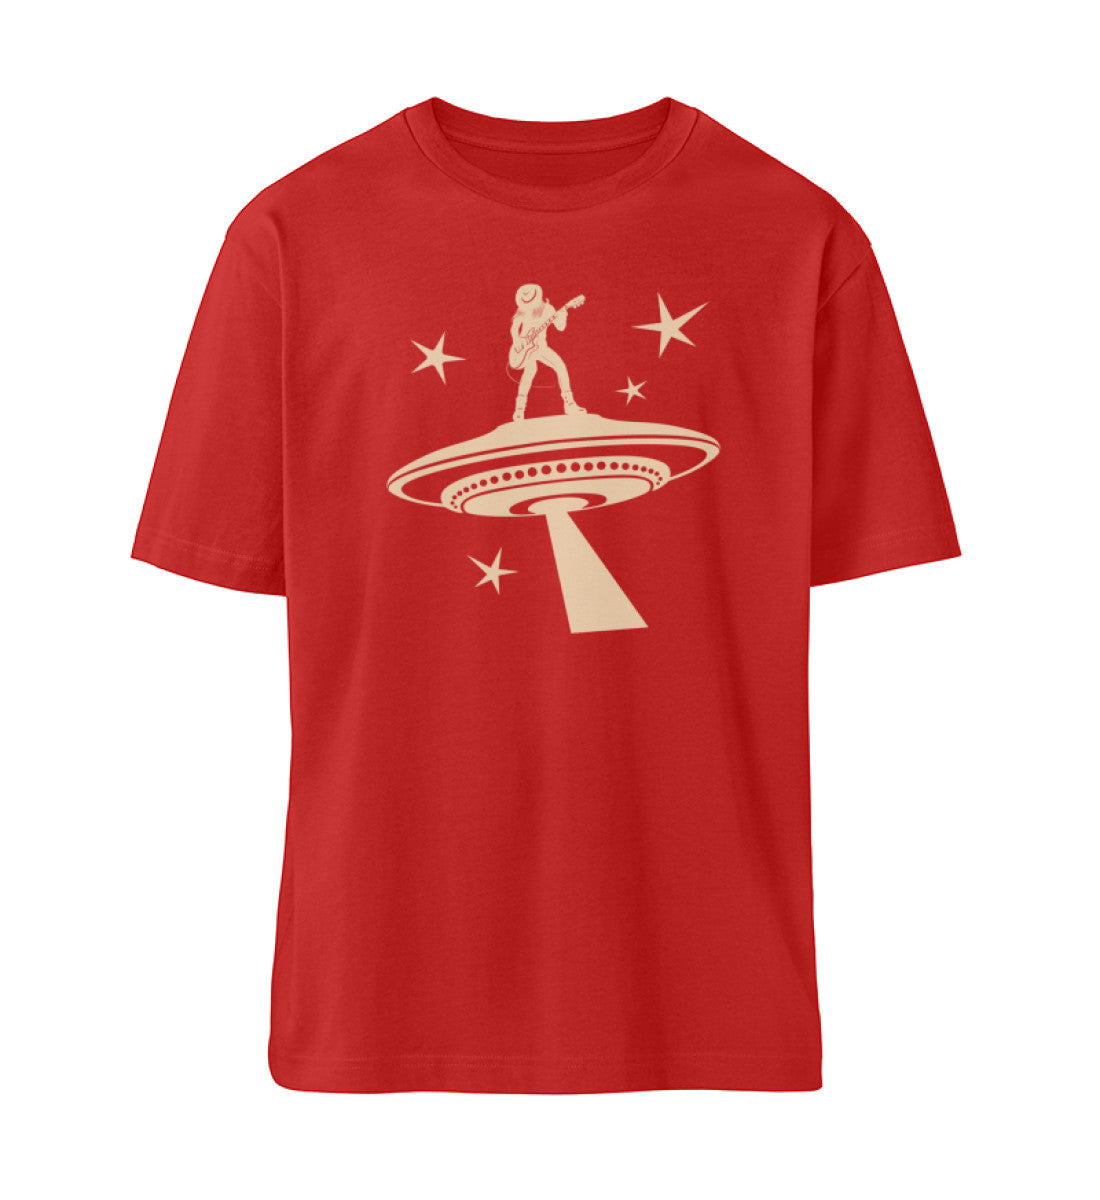 Rotes T-Shirt Unisex Relaxed Fit für Frauen und Männer bedruckt mit dem Design der Roger Rockawoo Kollektion Ufo Alien Guitarist outaspace gig